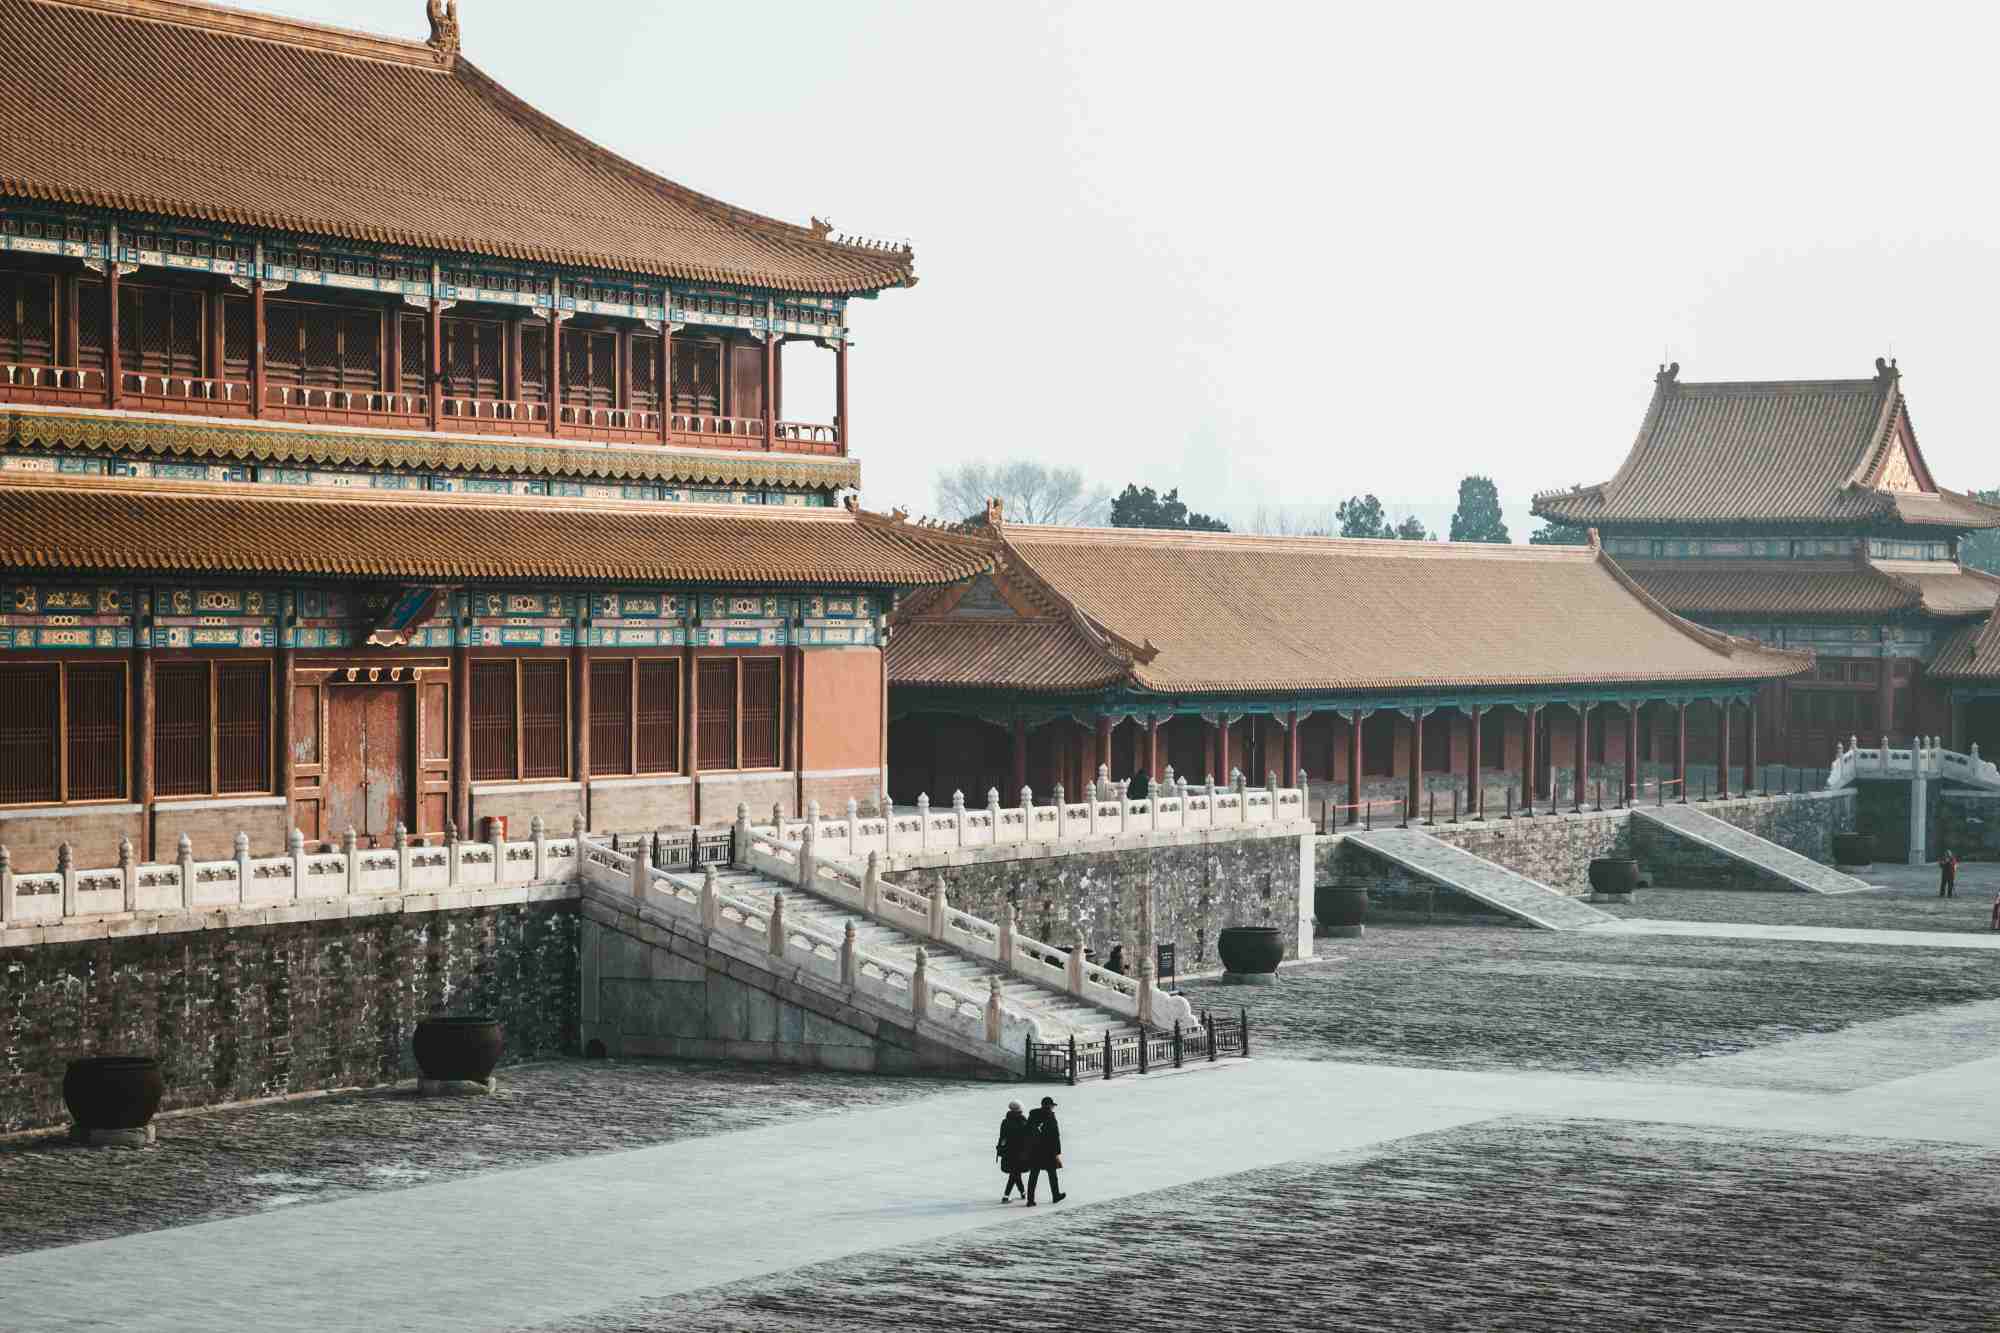 Tiananmen Square, Forbidden City, Temple of Heaven, The Red Theatre